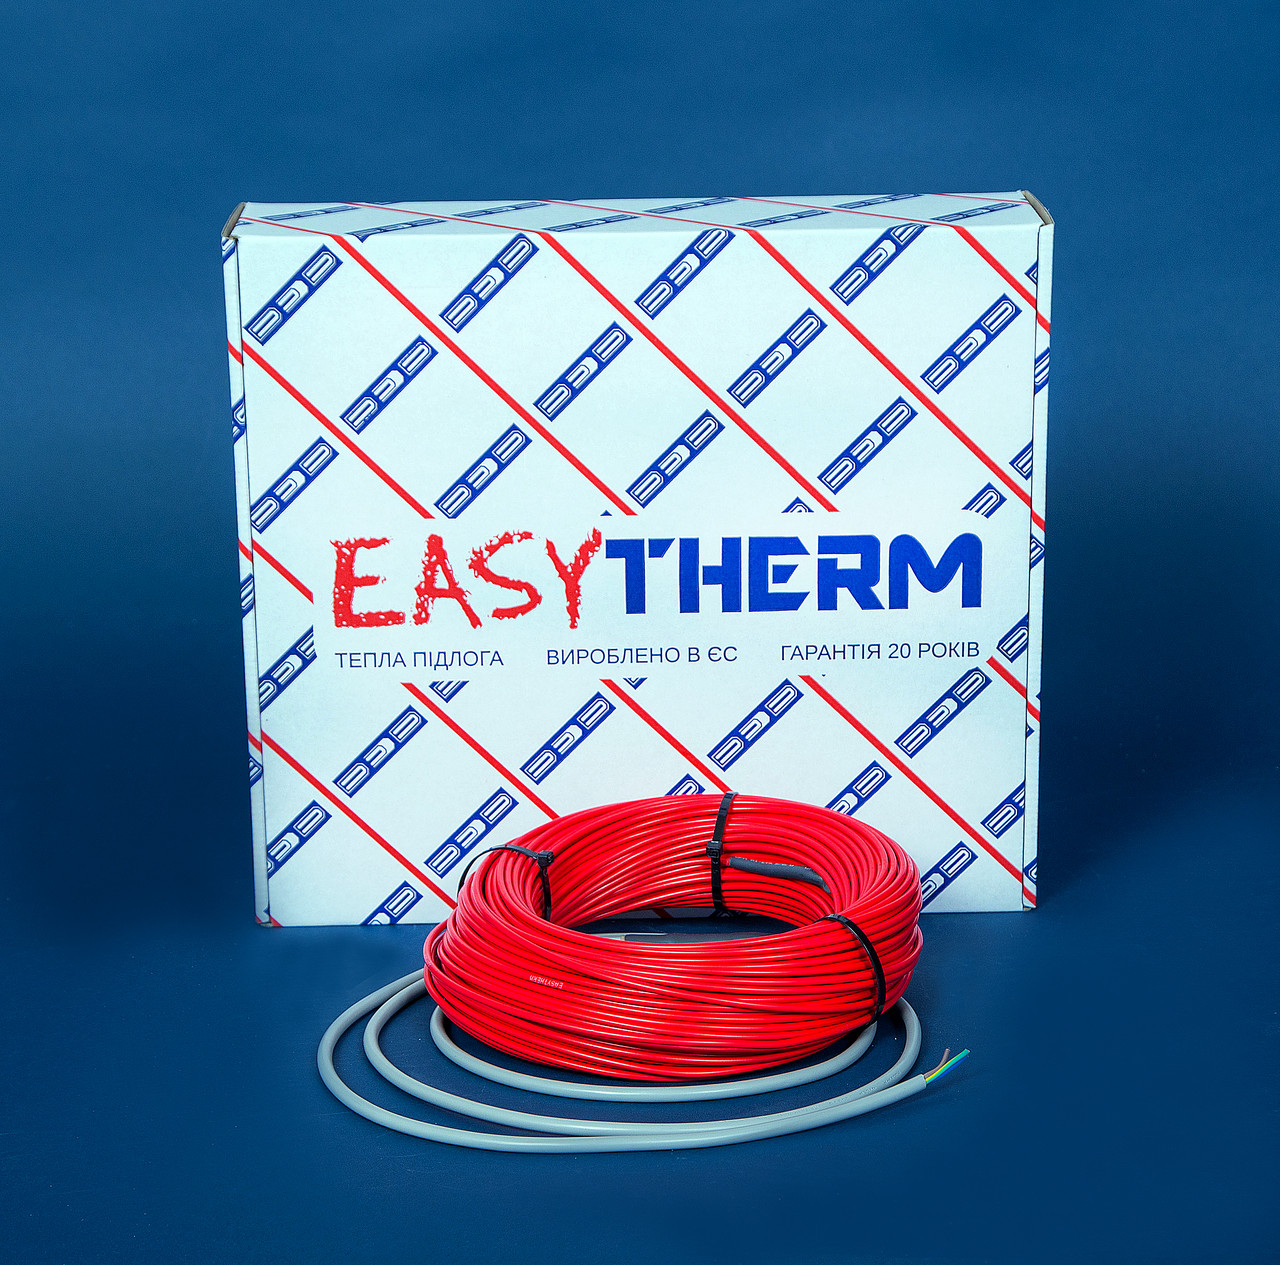 Электрический теплый пол EasyTherm Easycable 11.0 отзывы - изображения 5